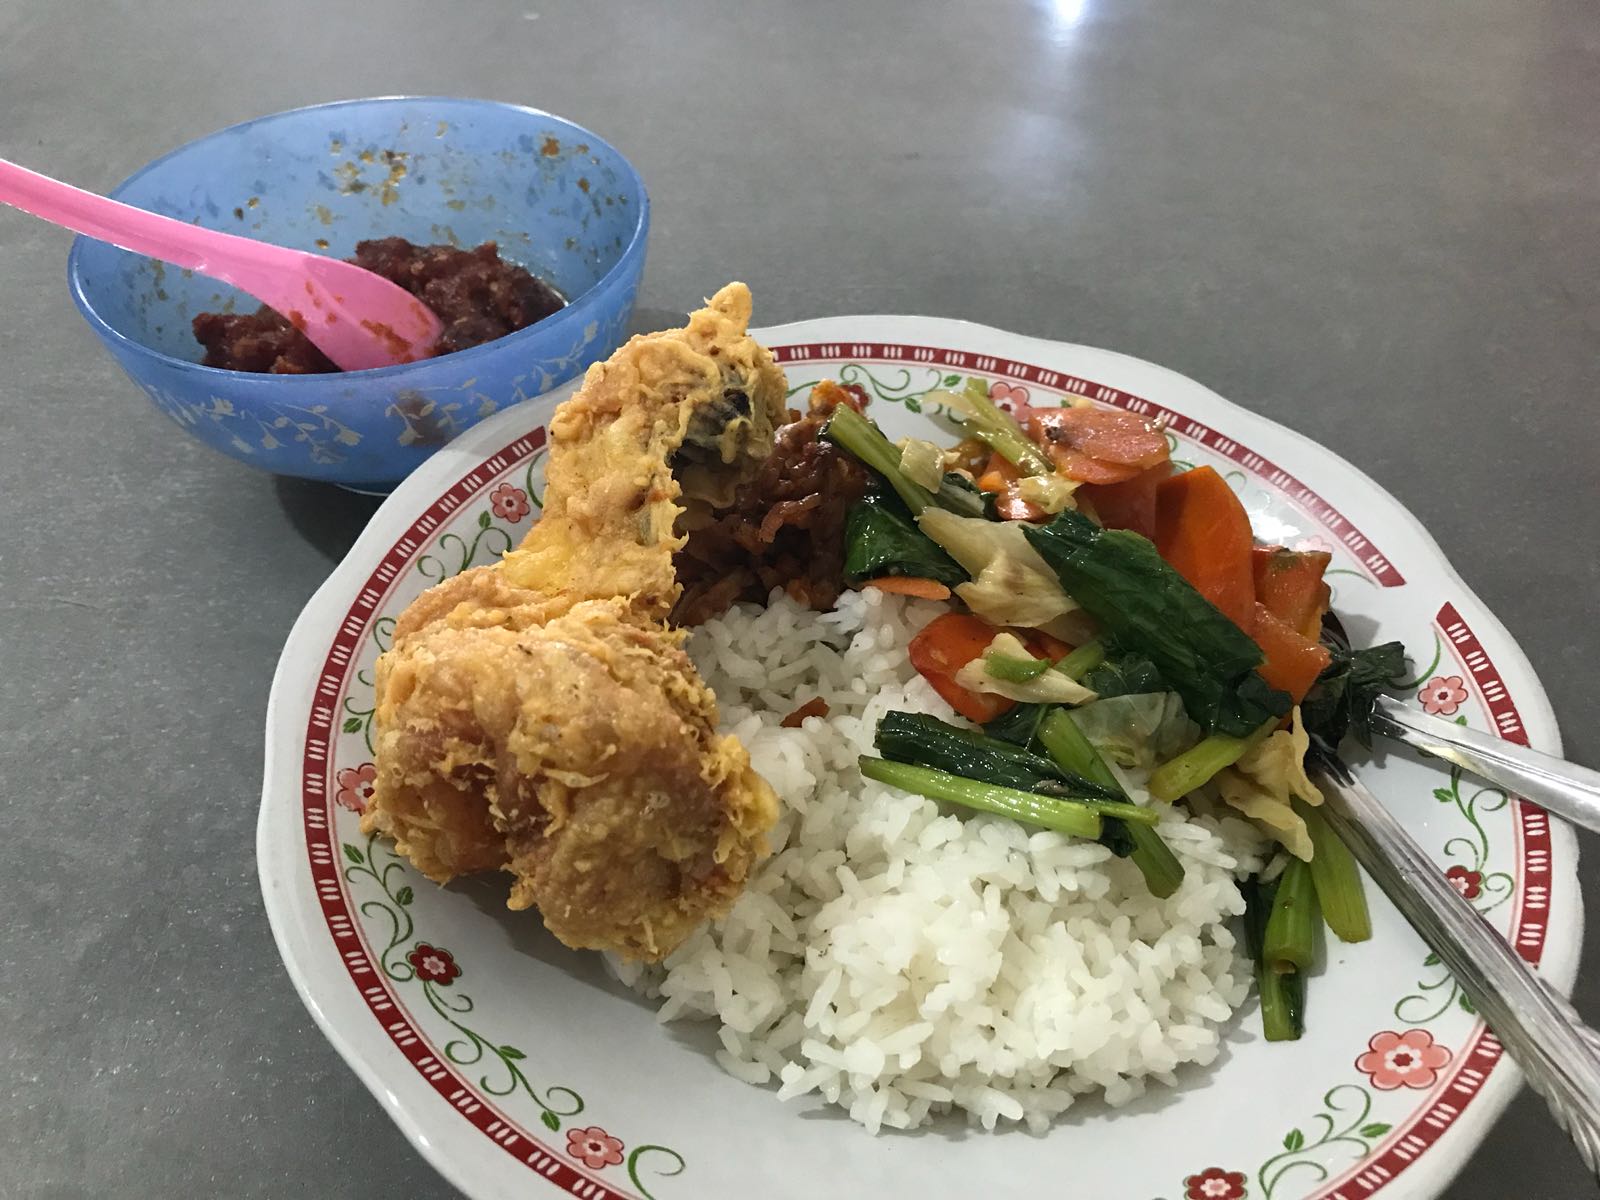 Plate of food at the Kpang night market